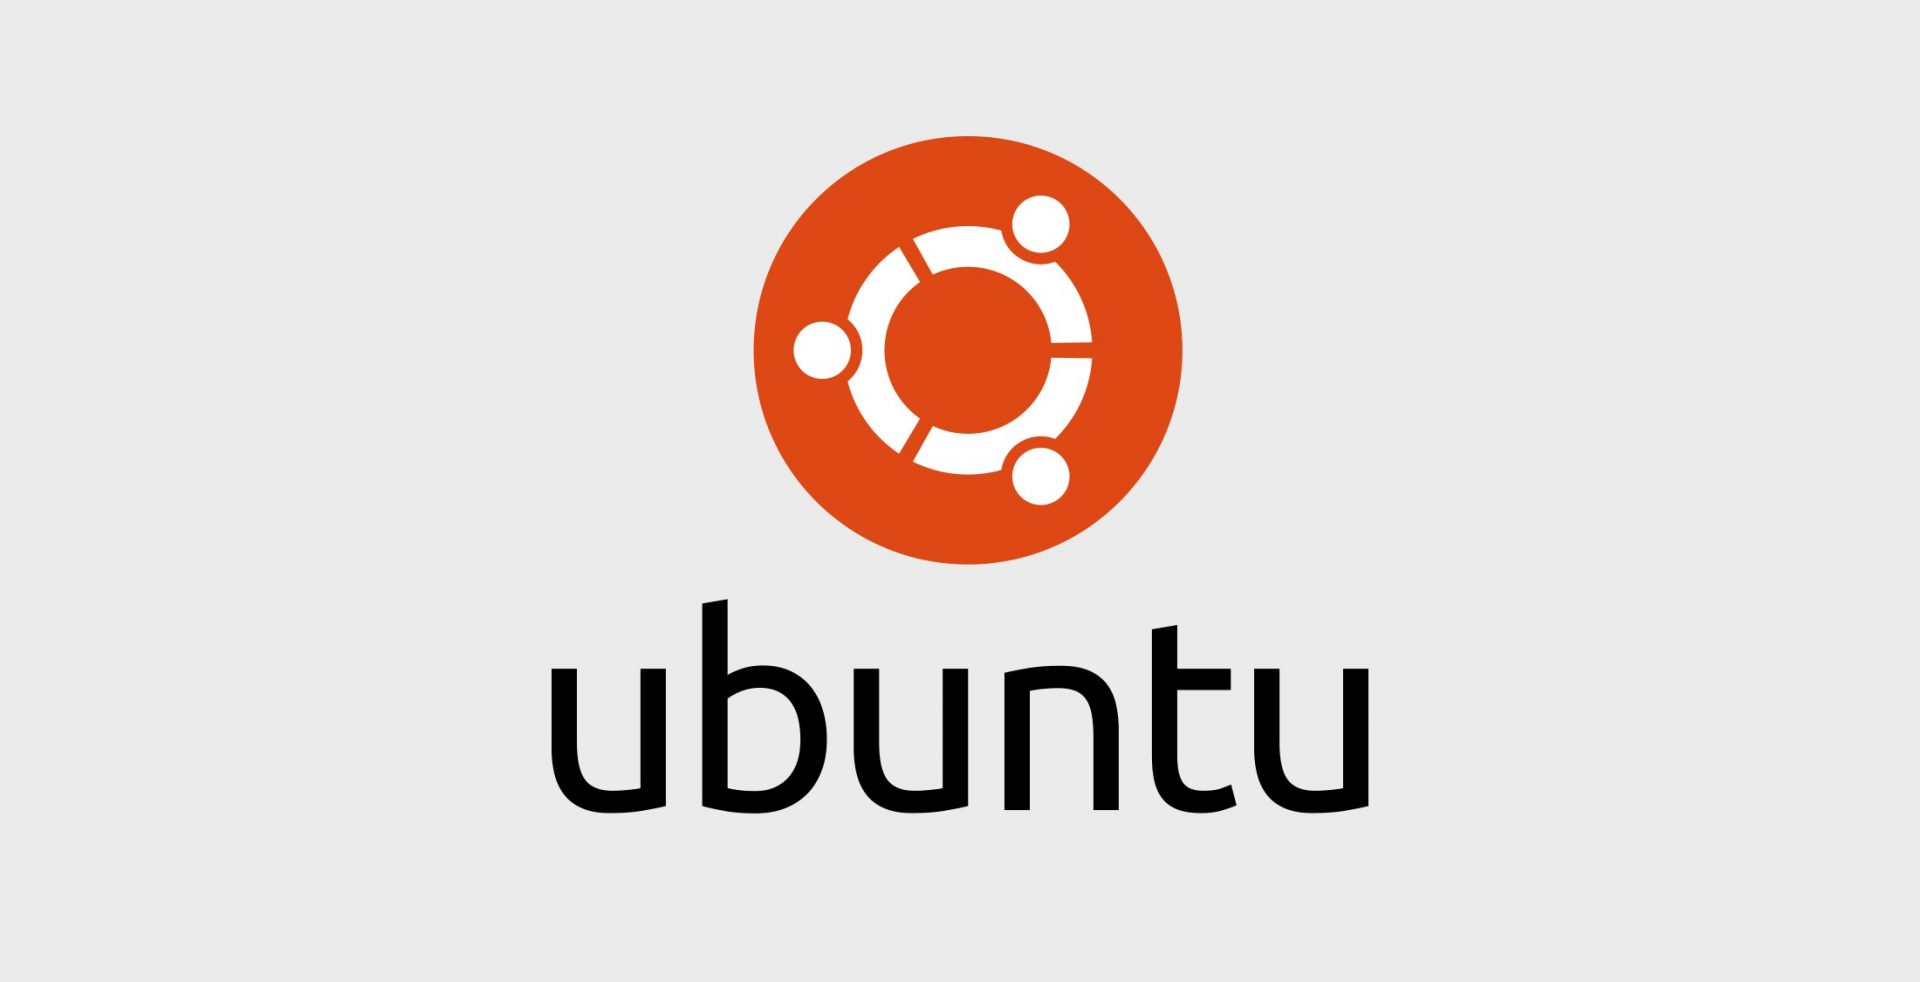 Ubuntu yüz tanıma